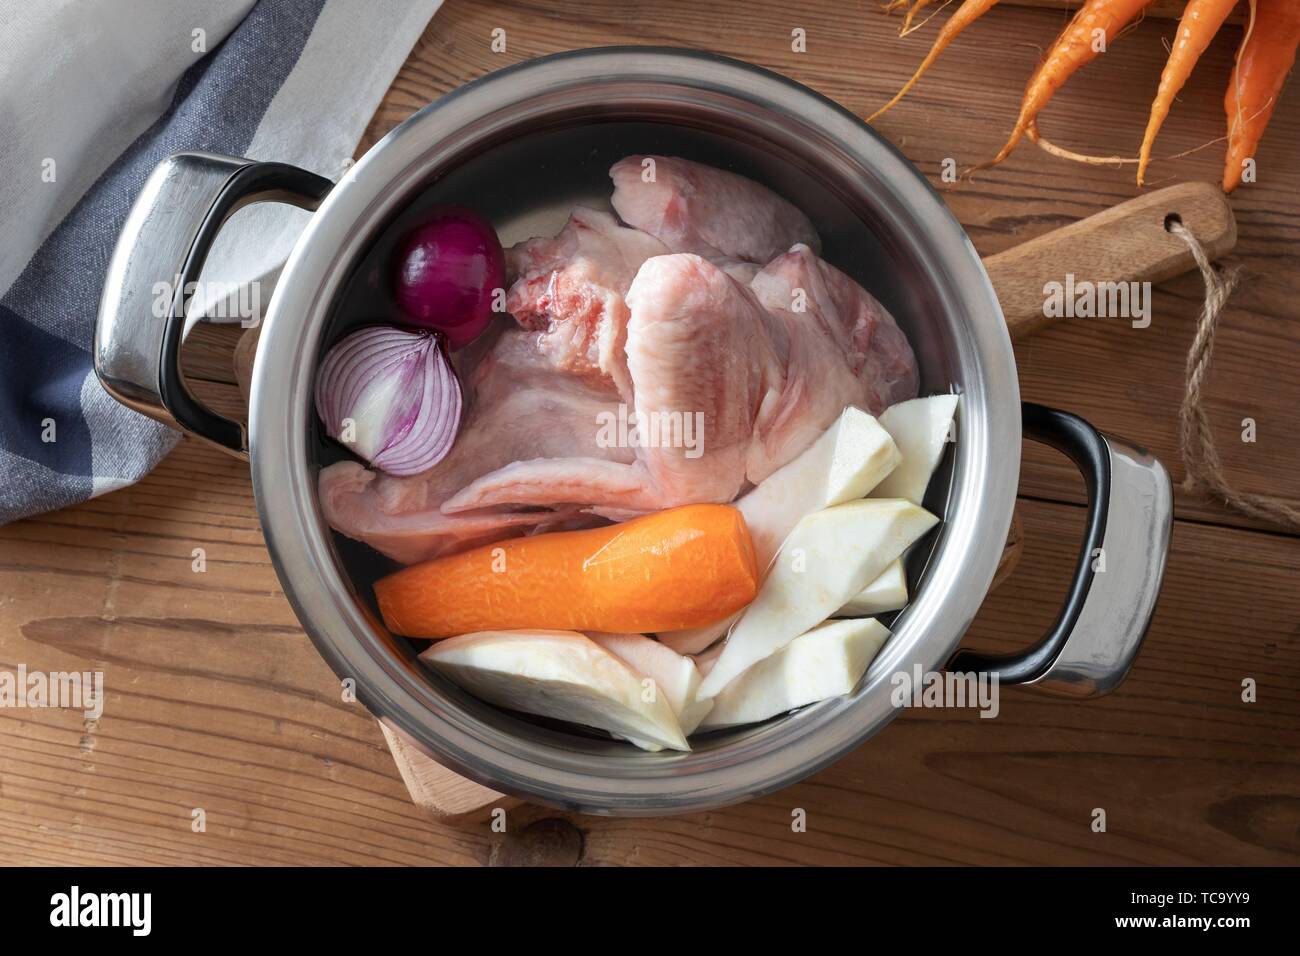 Huhn und frischem Gemüse - Zutaten für die Zubereitung von Knochen Brühe in  einen Topf Stockfotografie - Alamy